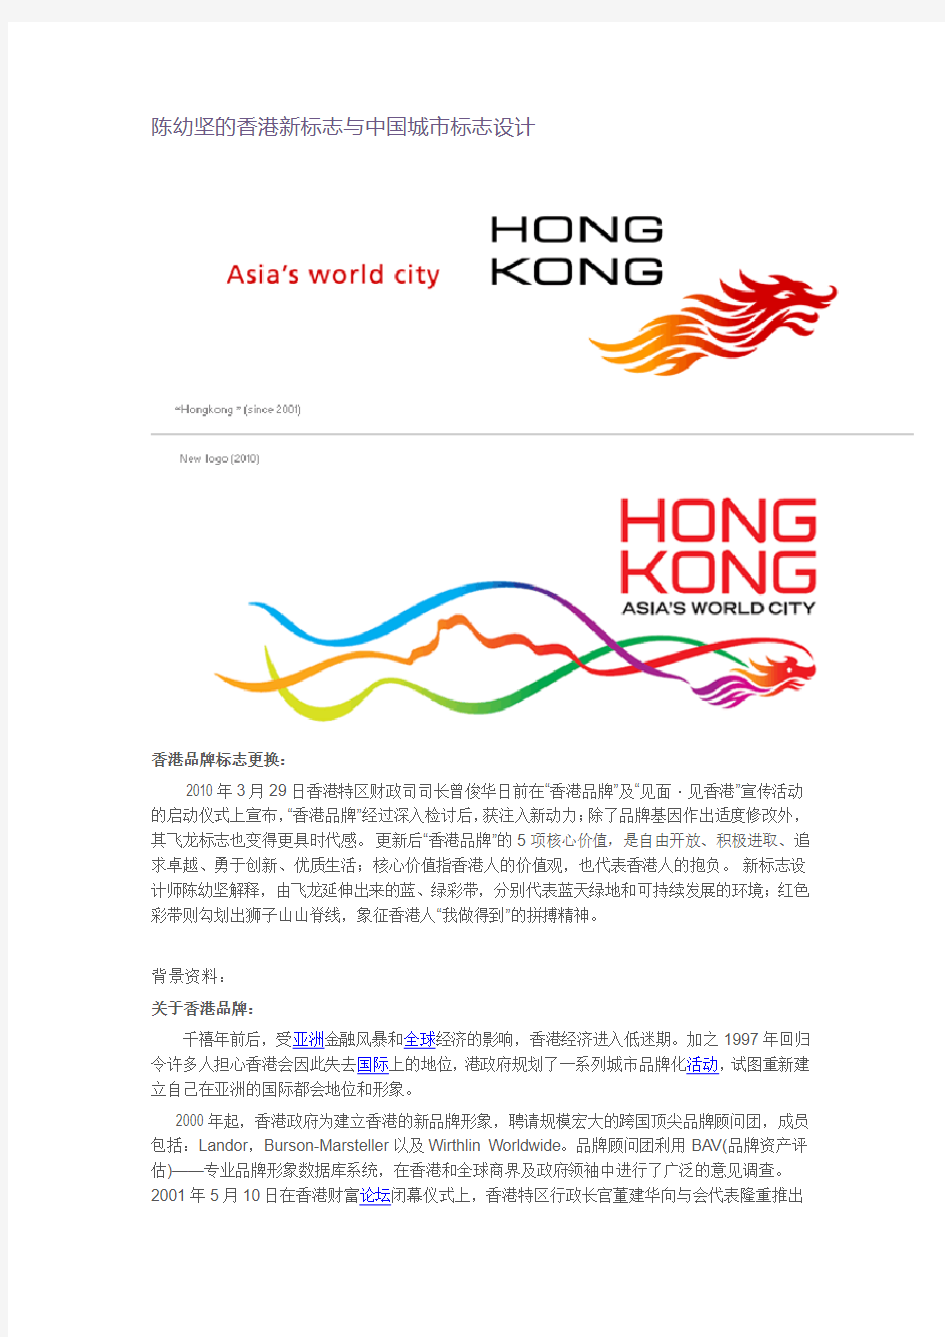 陈幼坚的香港新标志与中国城市标志设计